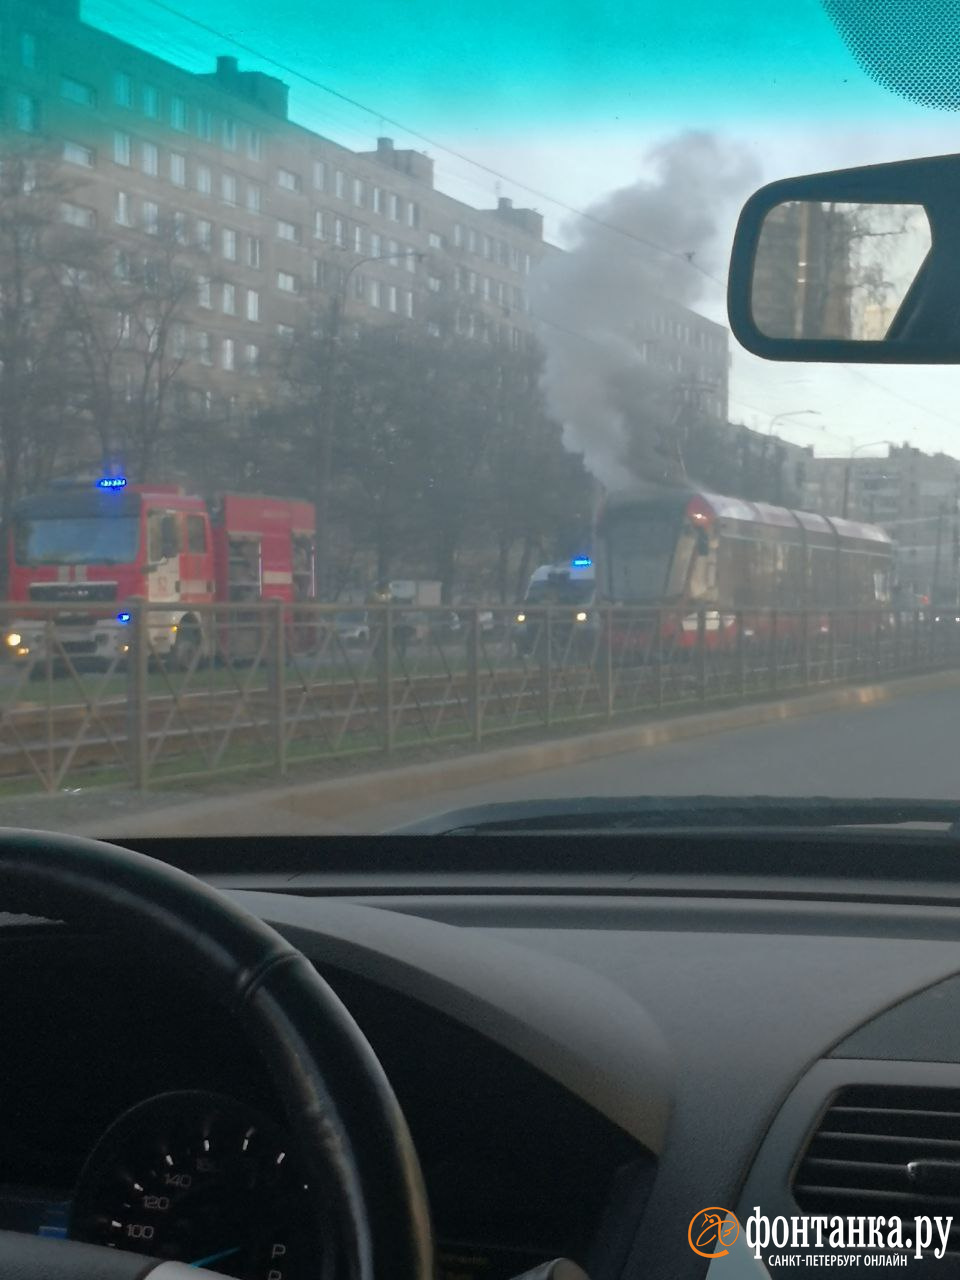 Столб черного дыма повалил из горящего трамвая на проспекте Солидарности. Из салона вырывались языки пламени